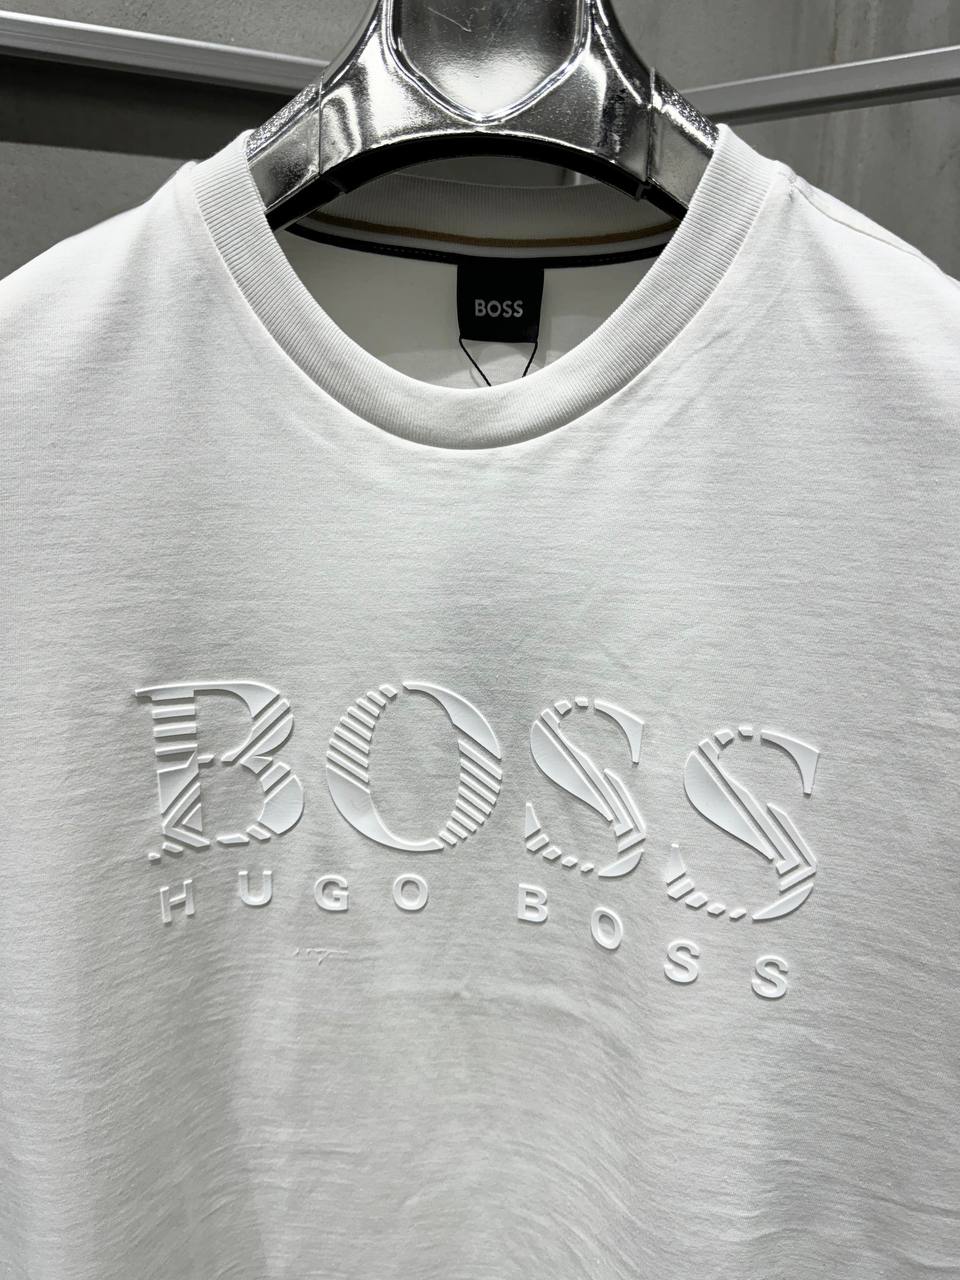 BOSS Rubber Logo White Tshirt For Men